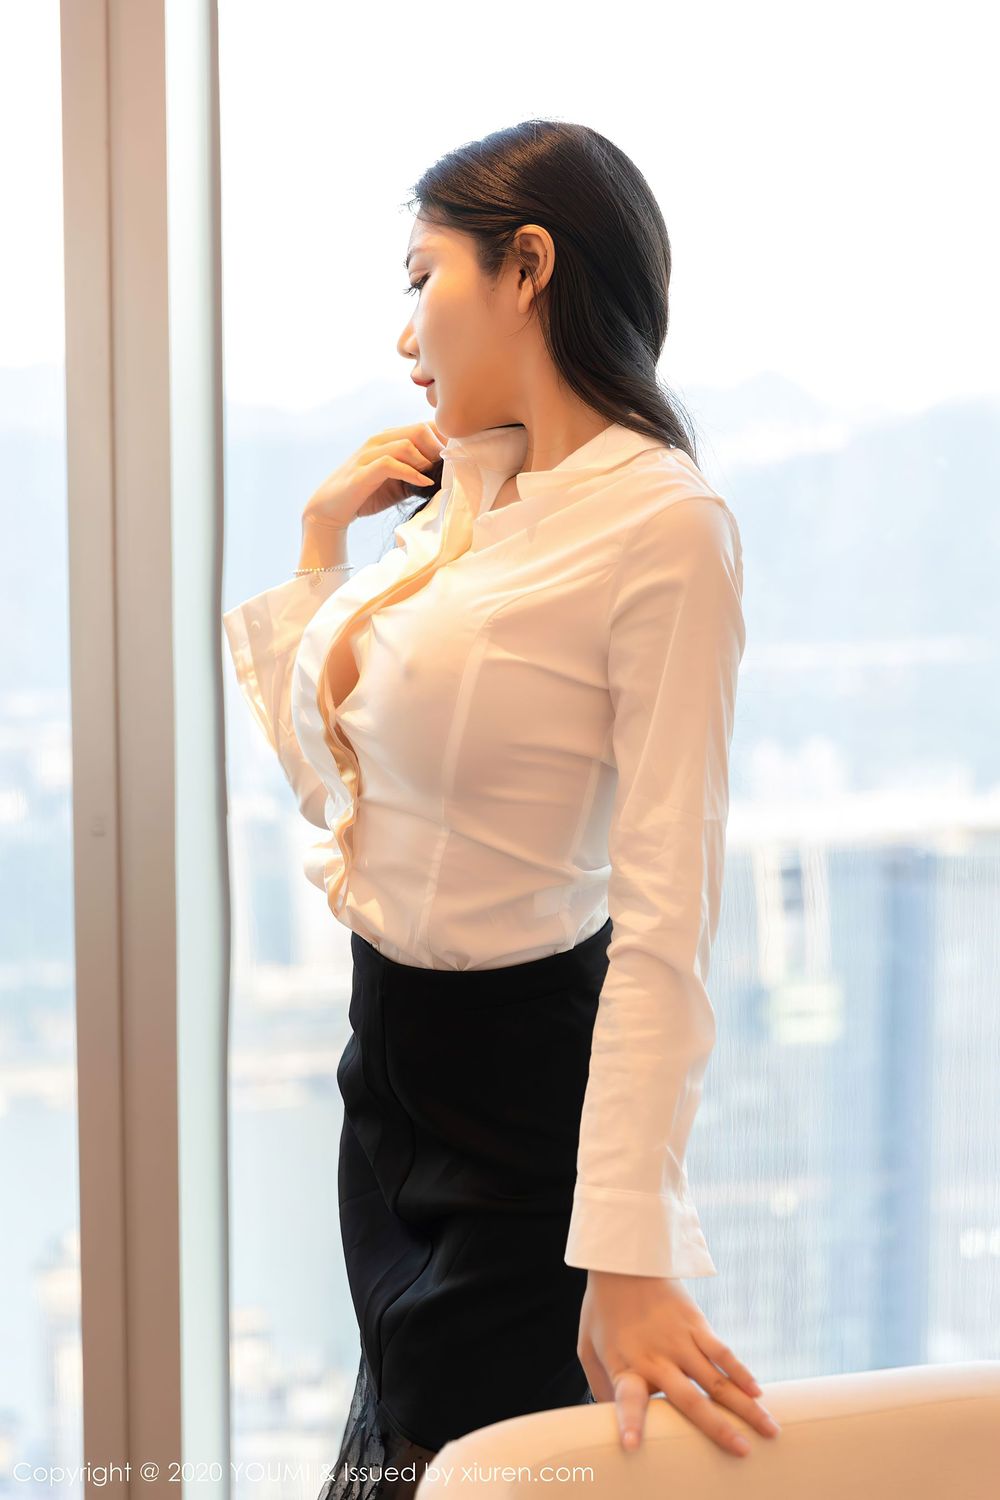 模特心妍小公主 - 白衬衫、超短裙与黑丝袜OL系列写真